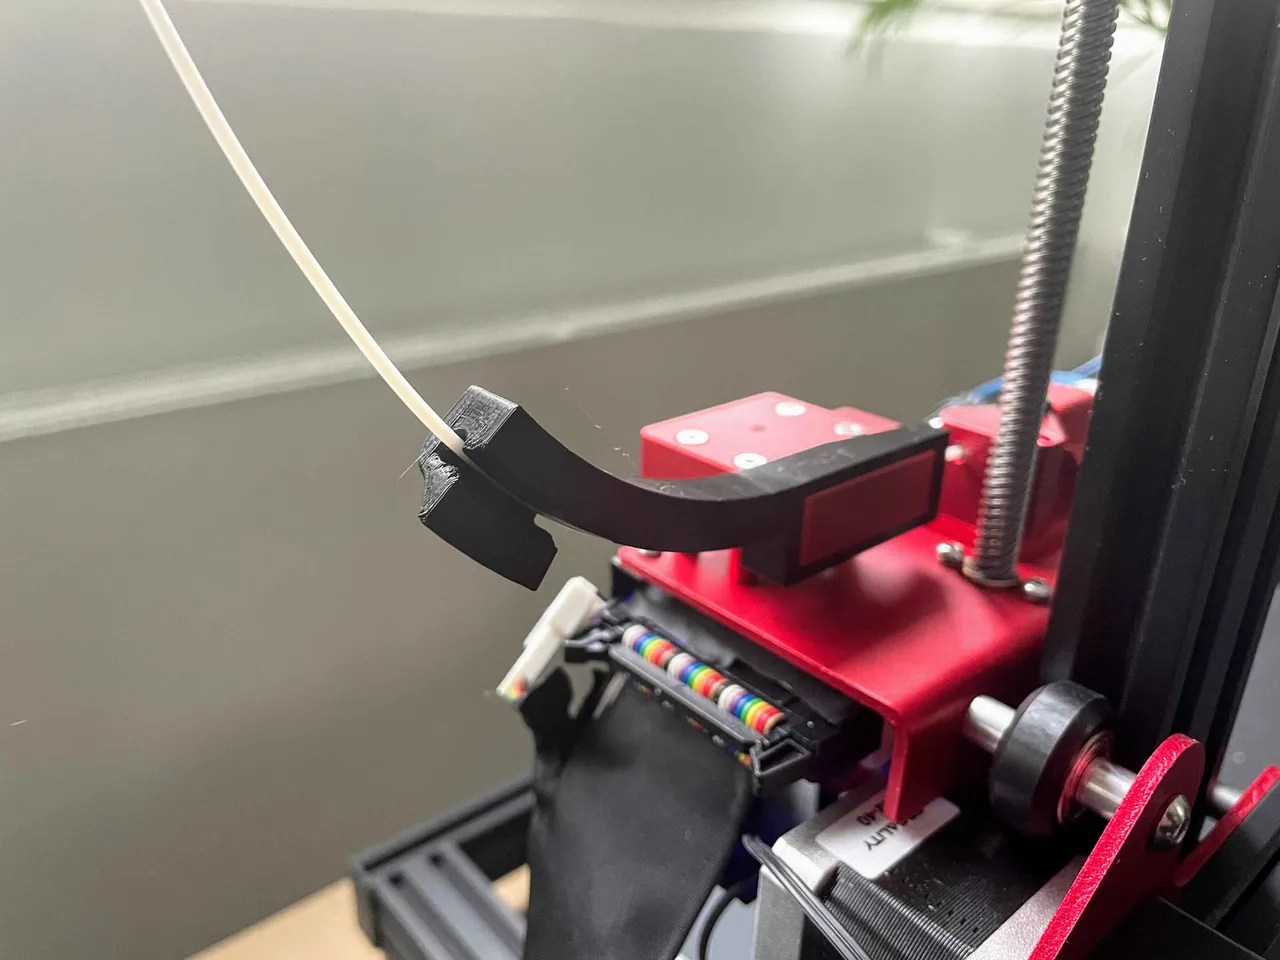 Creality CR-10 Max Kit imprimante 3D adapté à tous les types de filaments